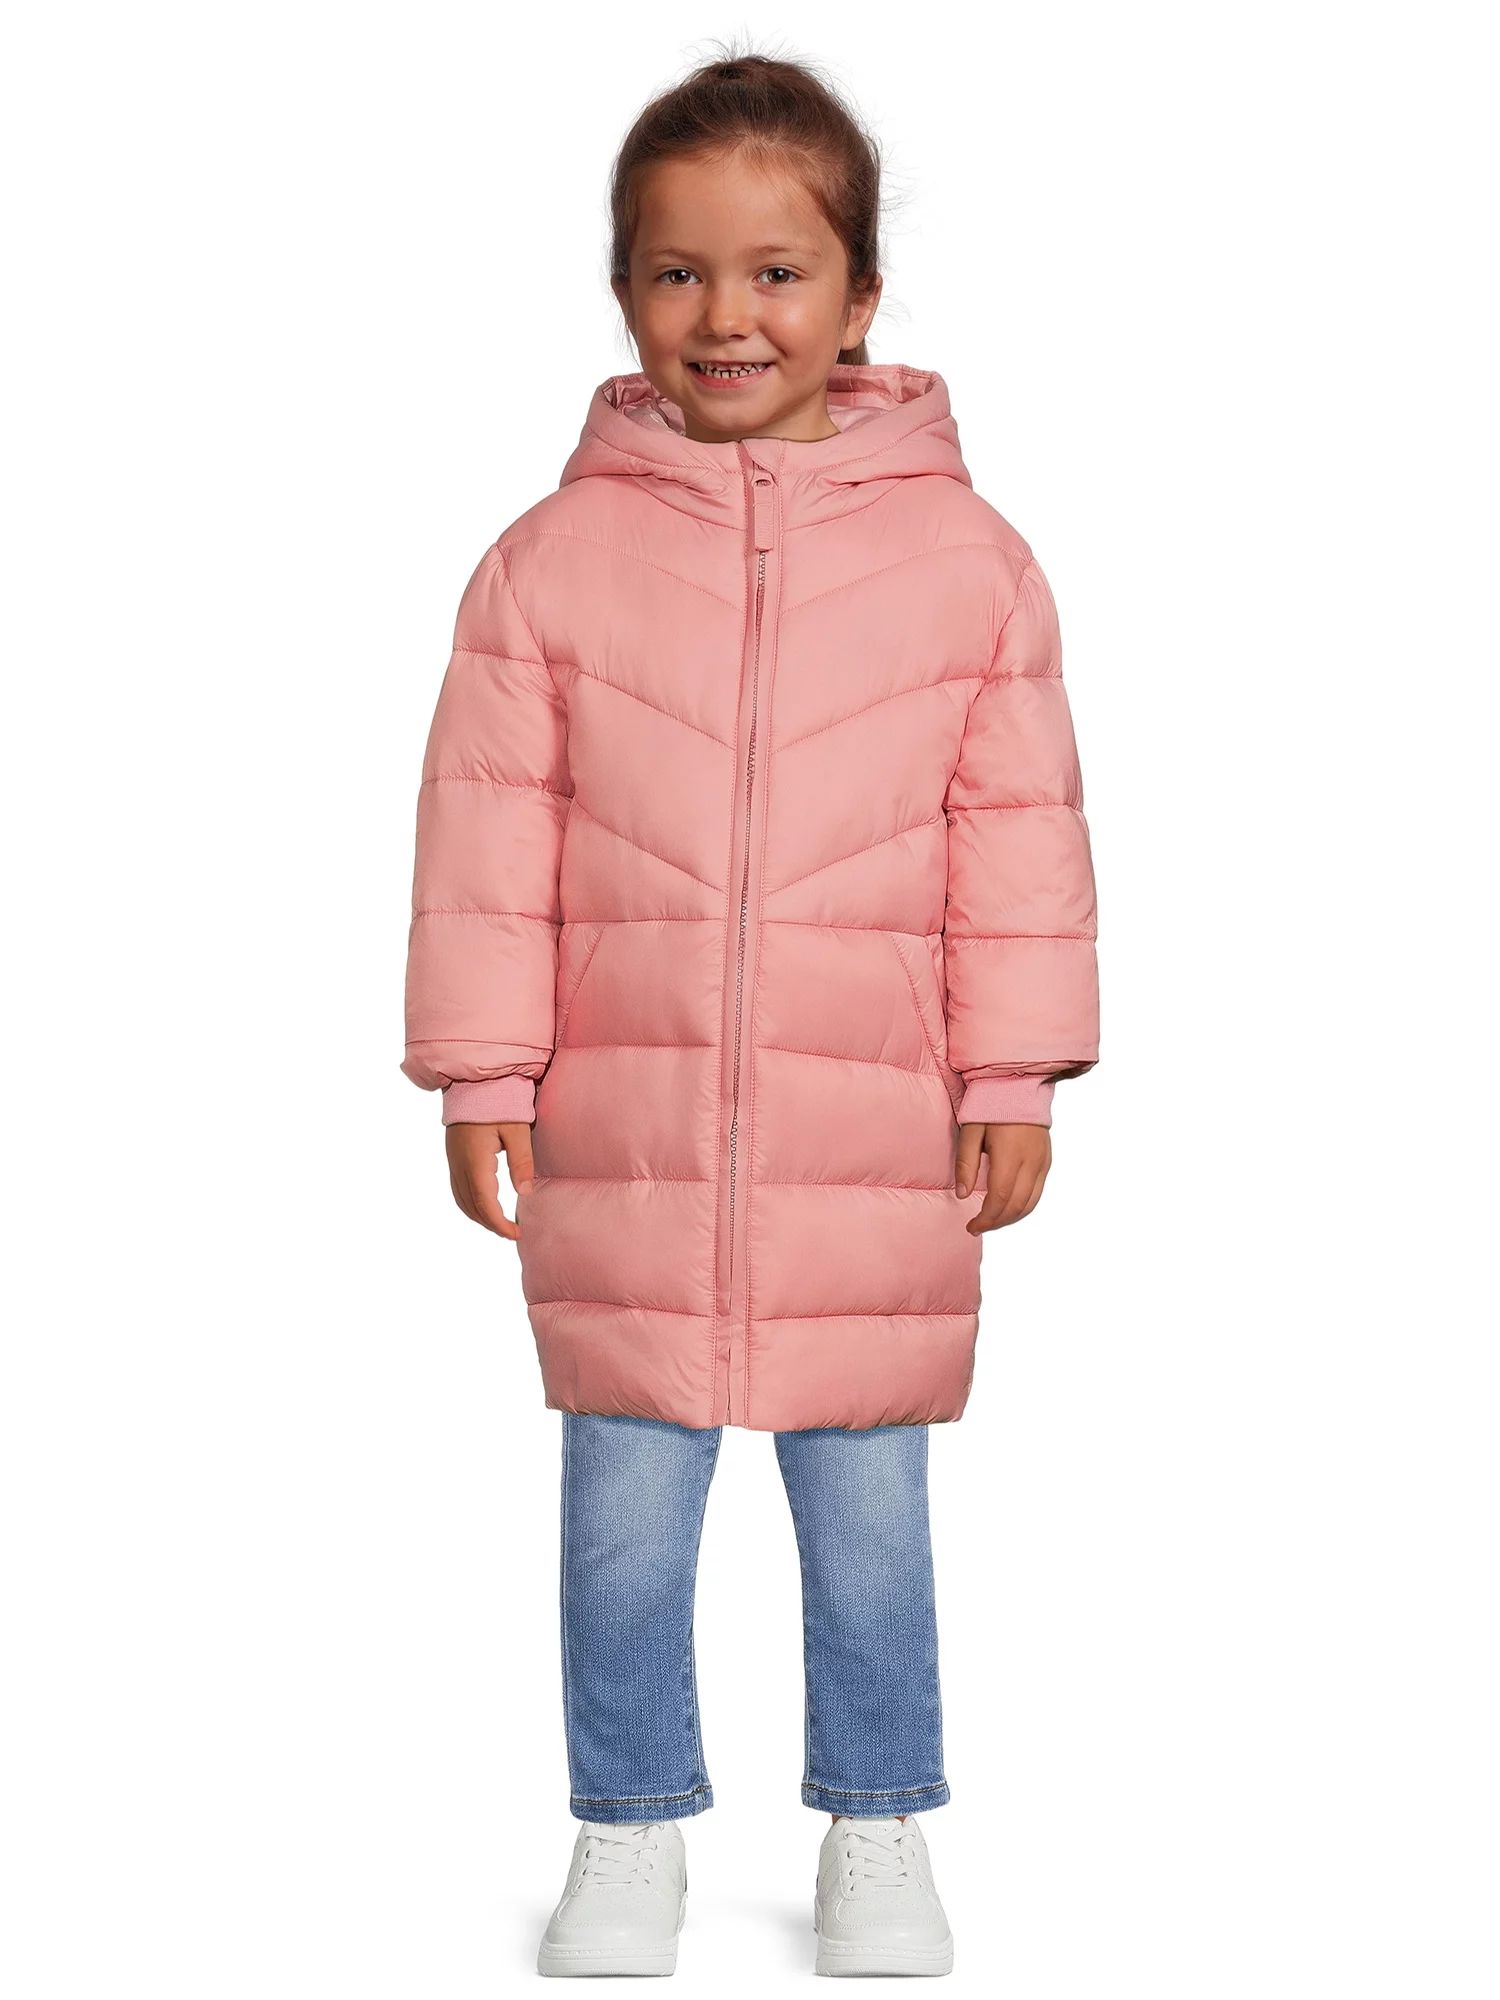 Wonder Nation Toddler Long Length Puffer Jacket, Sizes 12M-5T | Walmart (US)